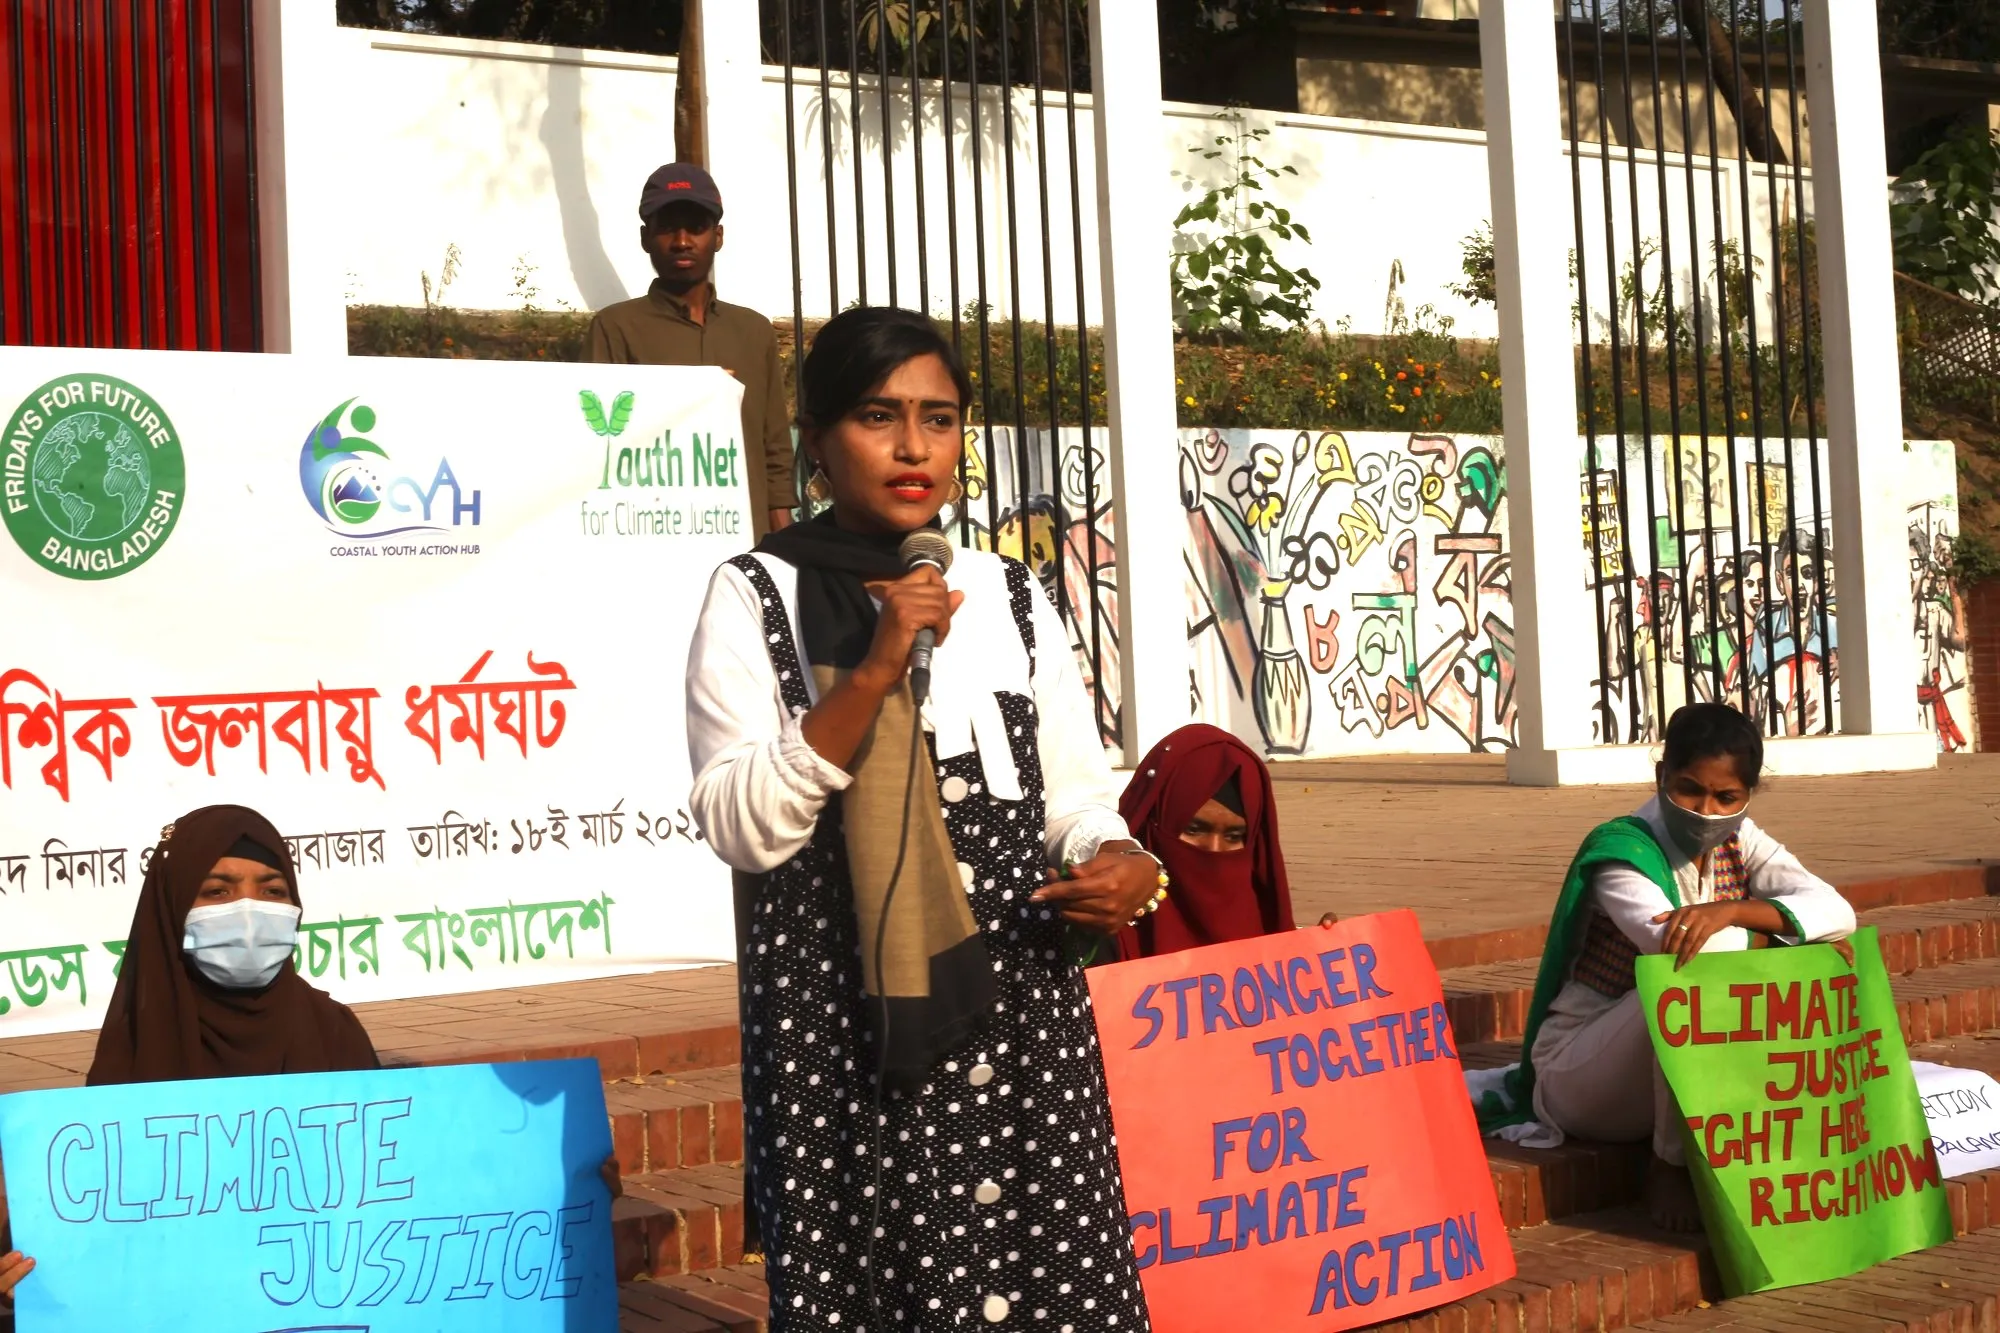 Una mujer sostiene un micrófono en un evento de justicia climática en Bangladesh.